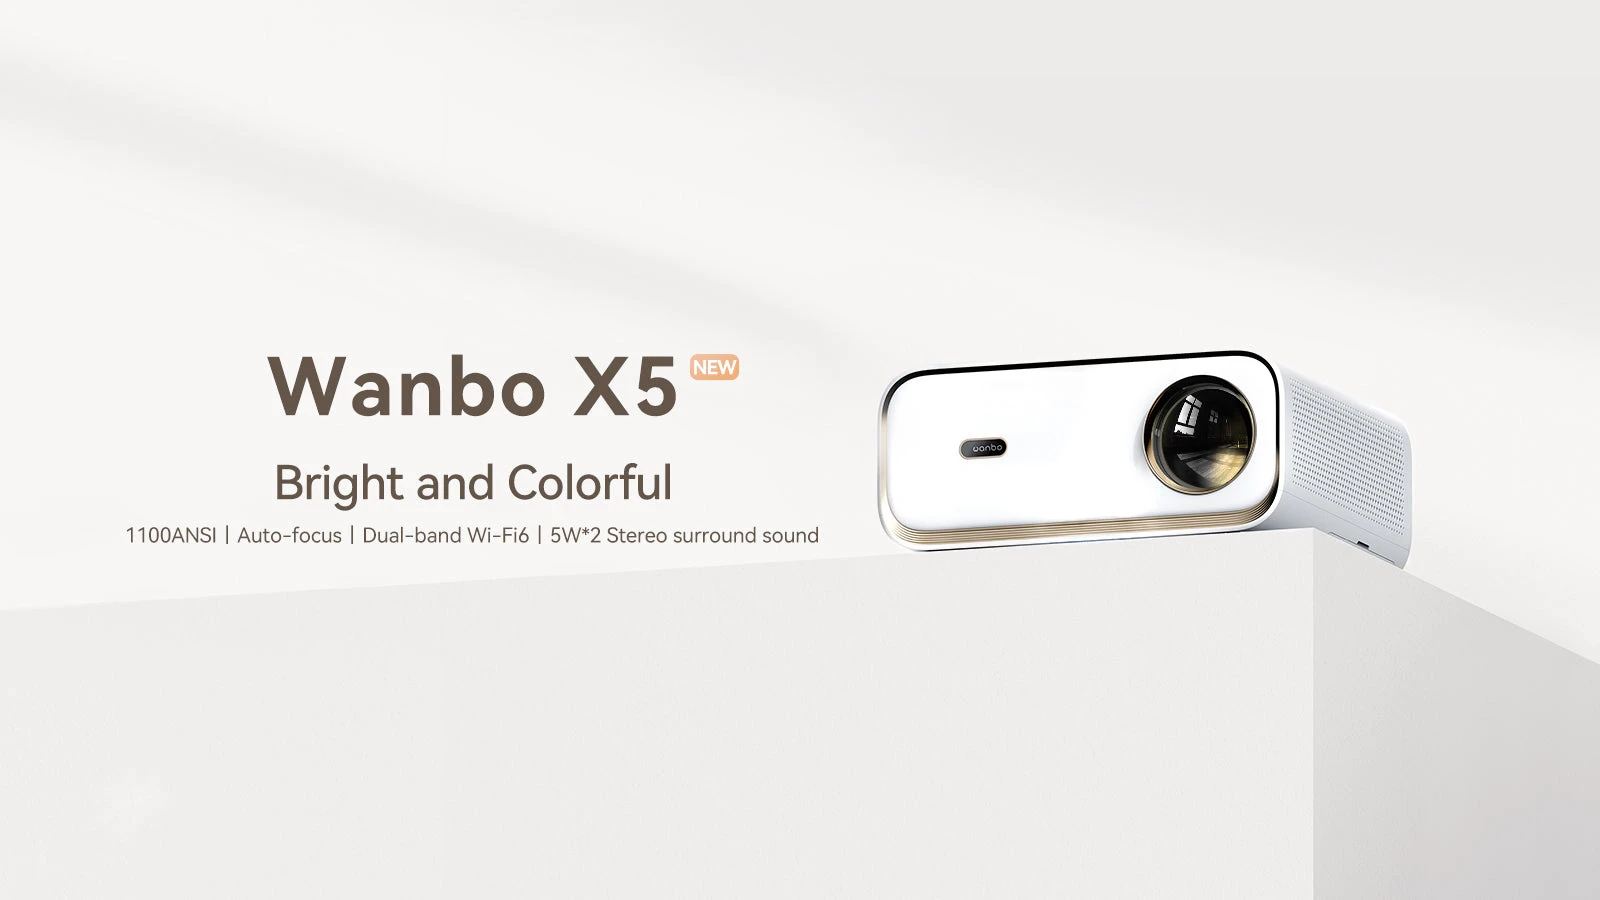 Wanbo X5 -Őrült olcsó a legerősebb Wanbo projektor és ajándék vásznat is kapunk mellé